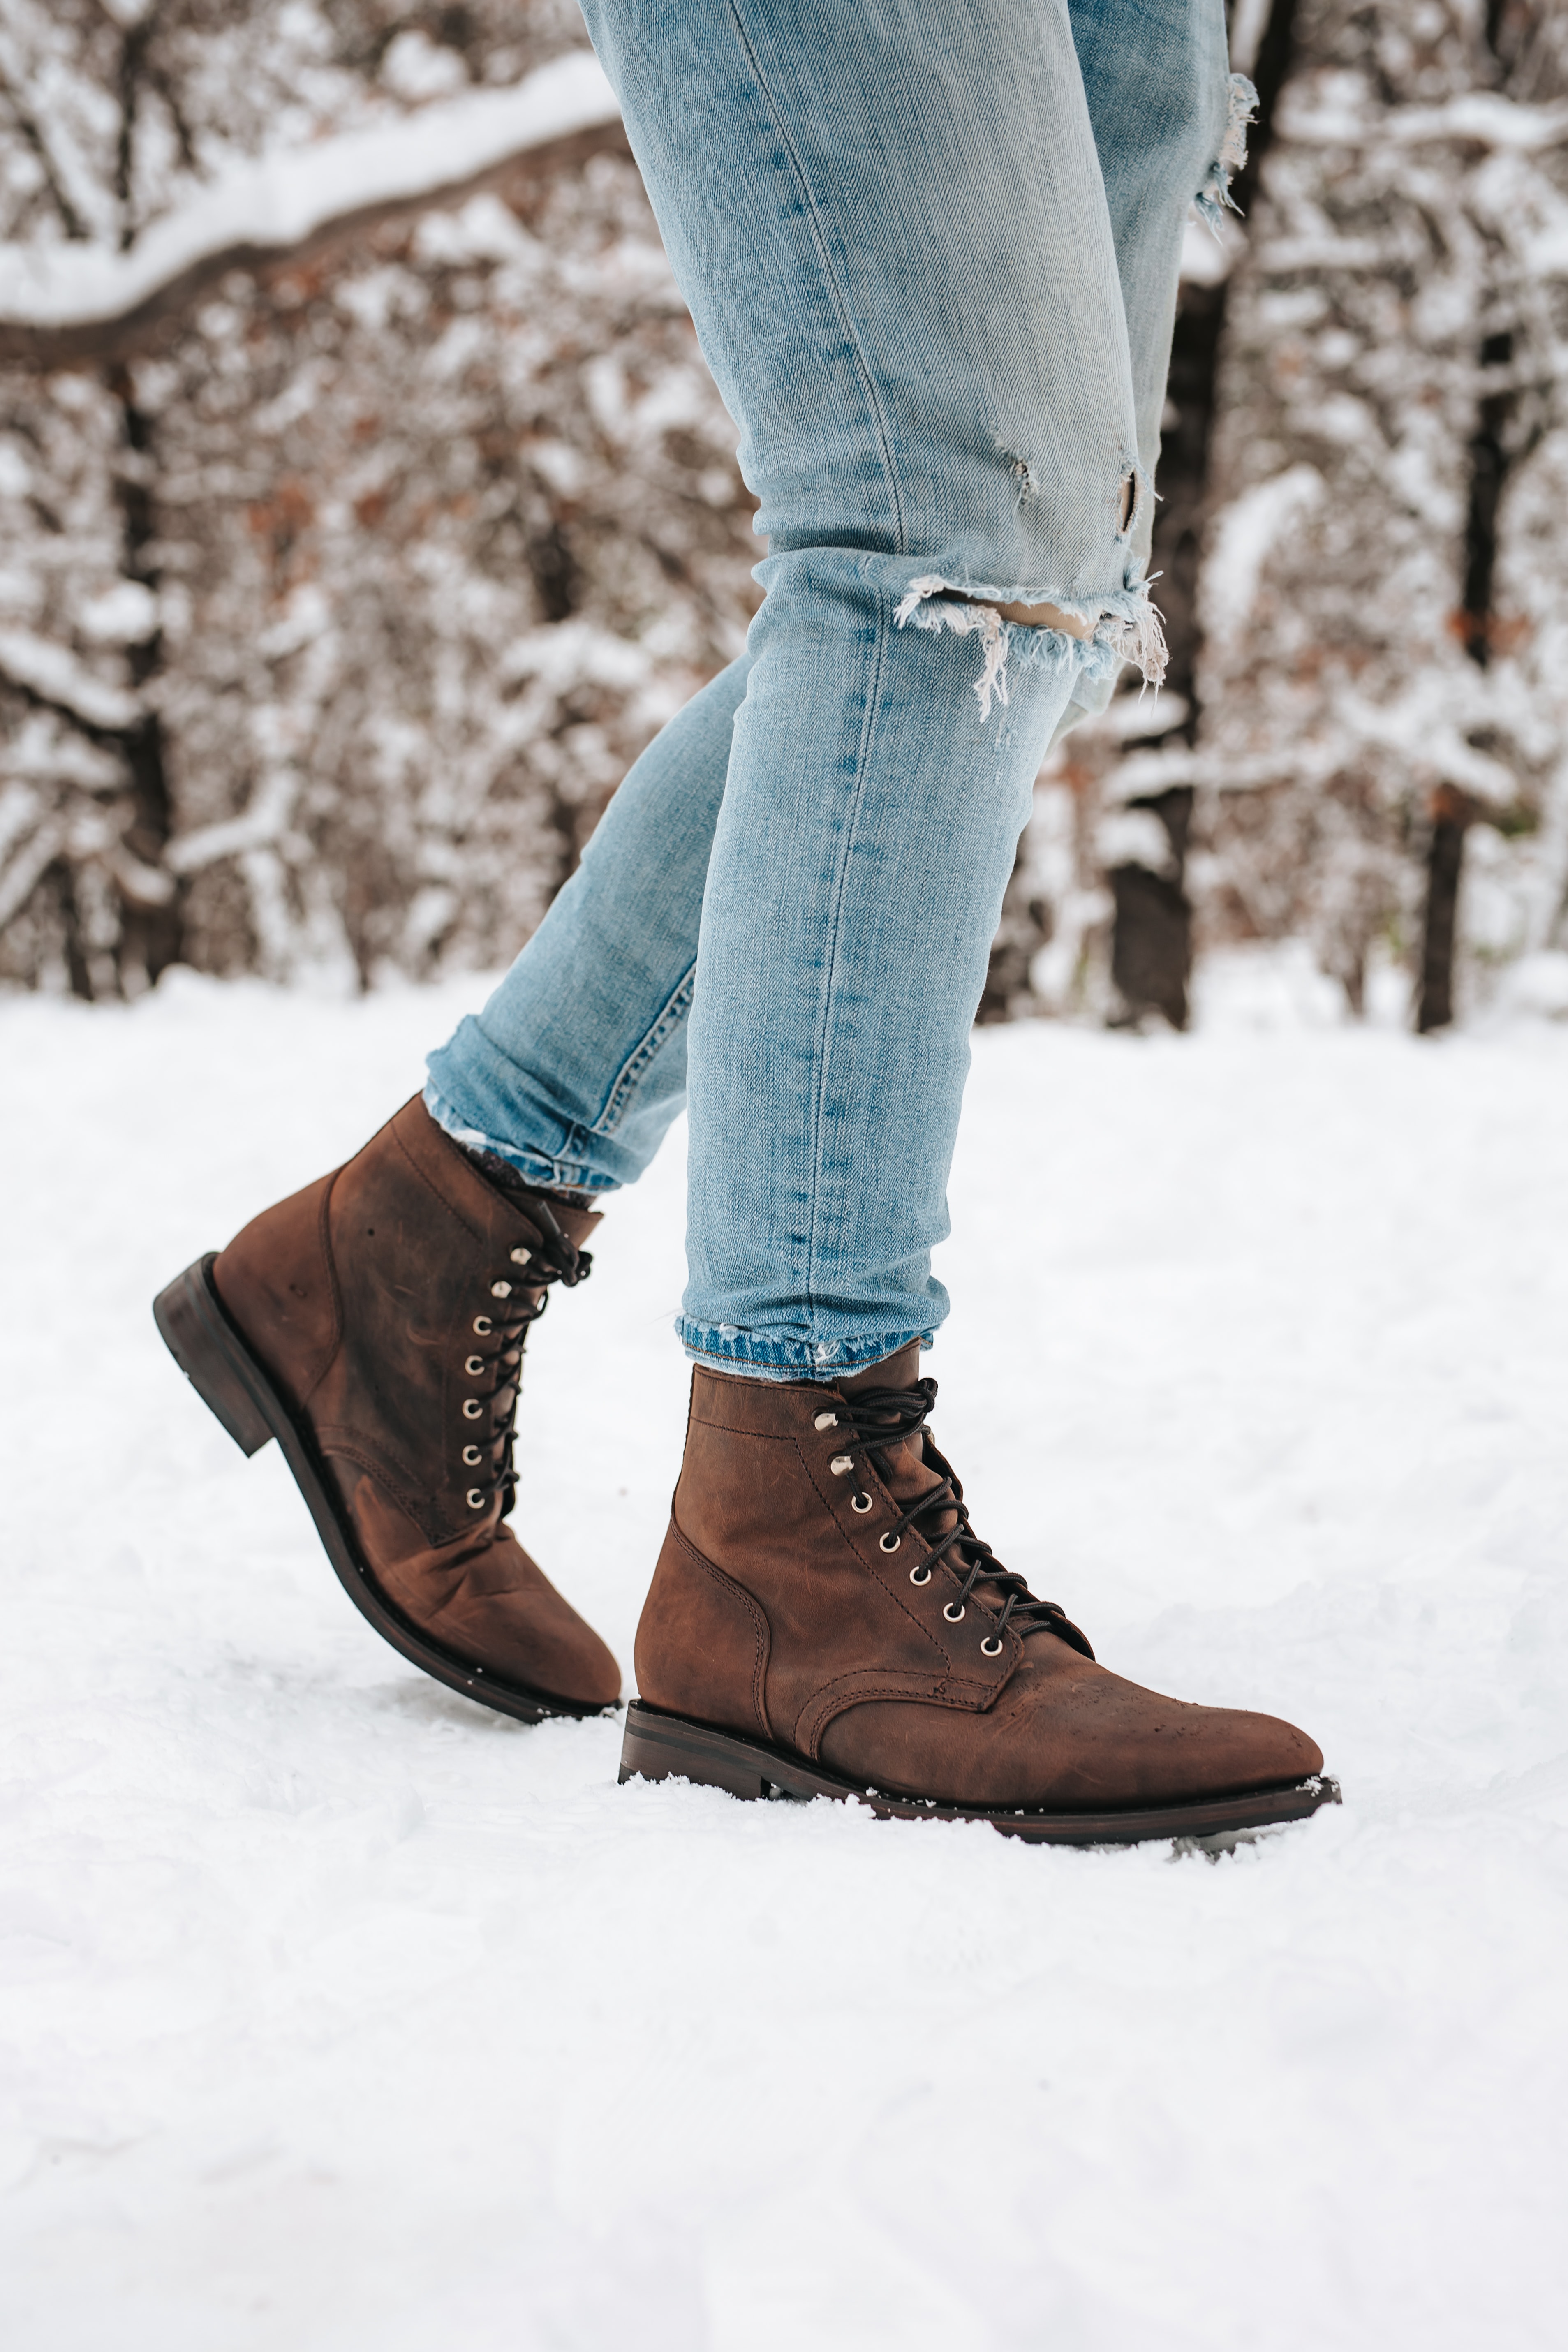 snow, miscellanea, miscellaneous, legs, boots, shoes, jeans